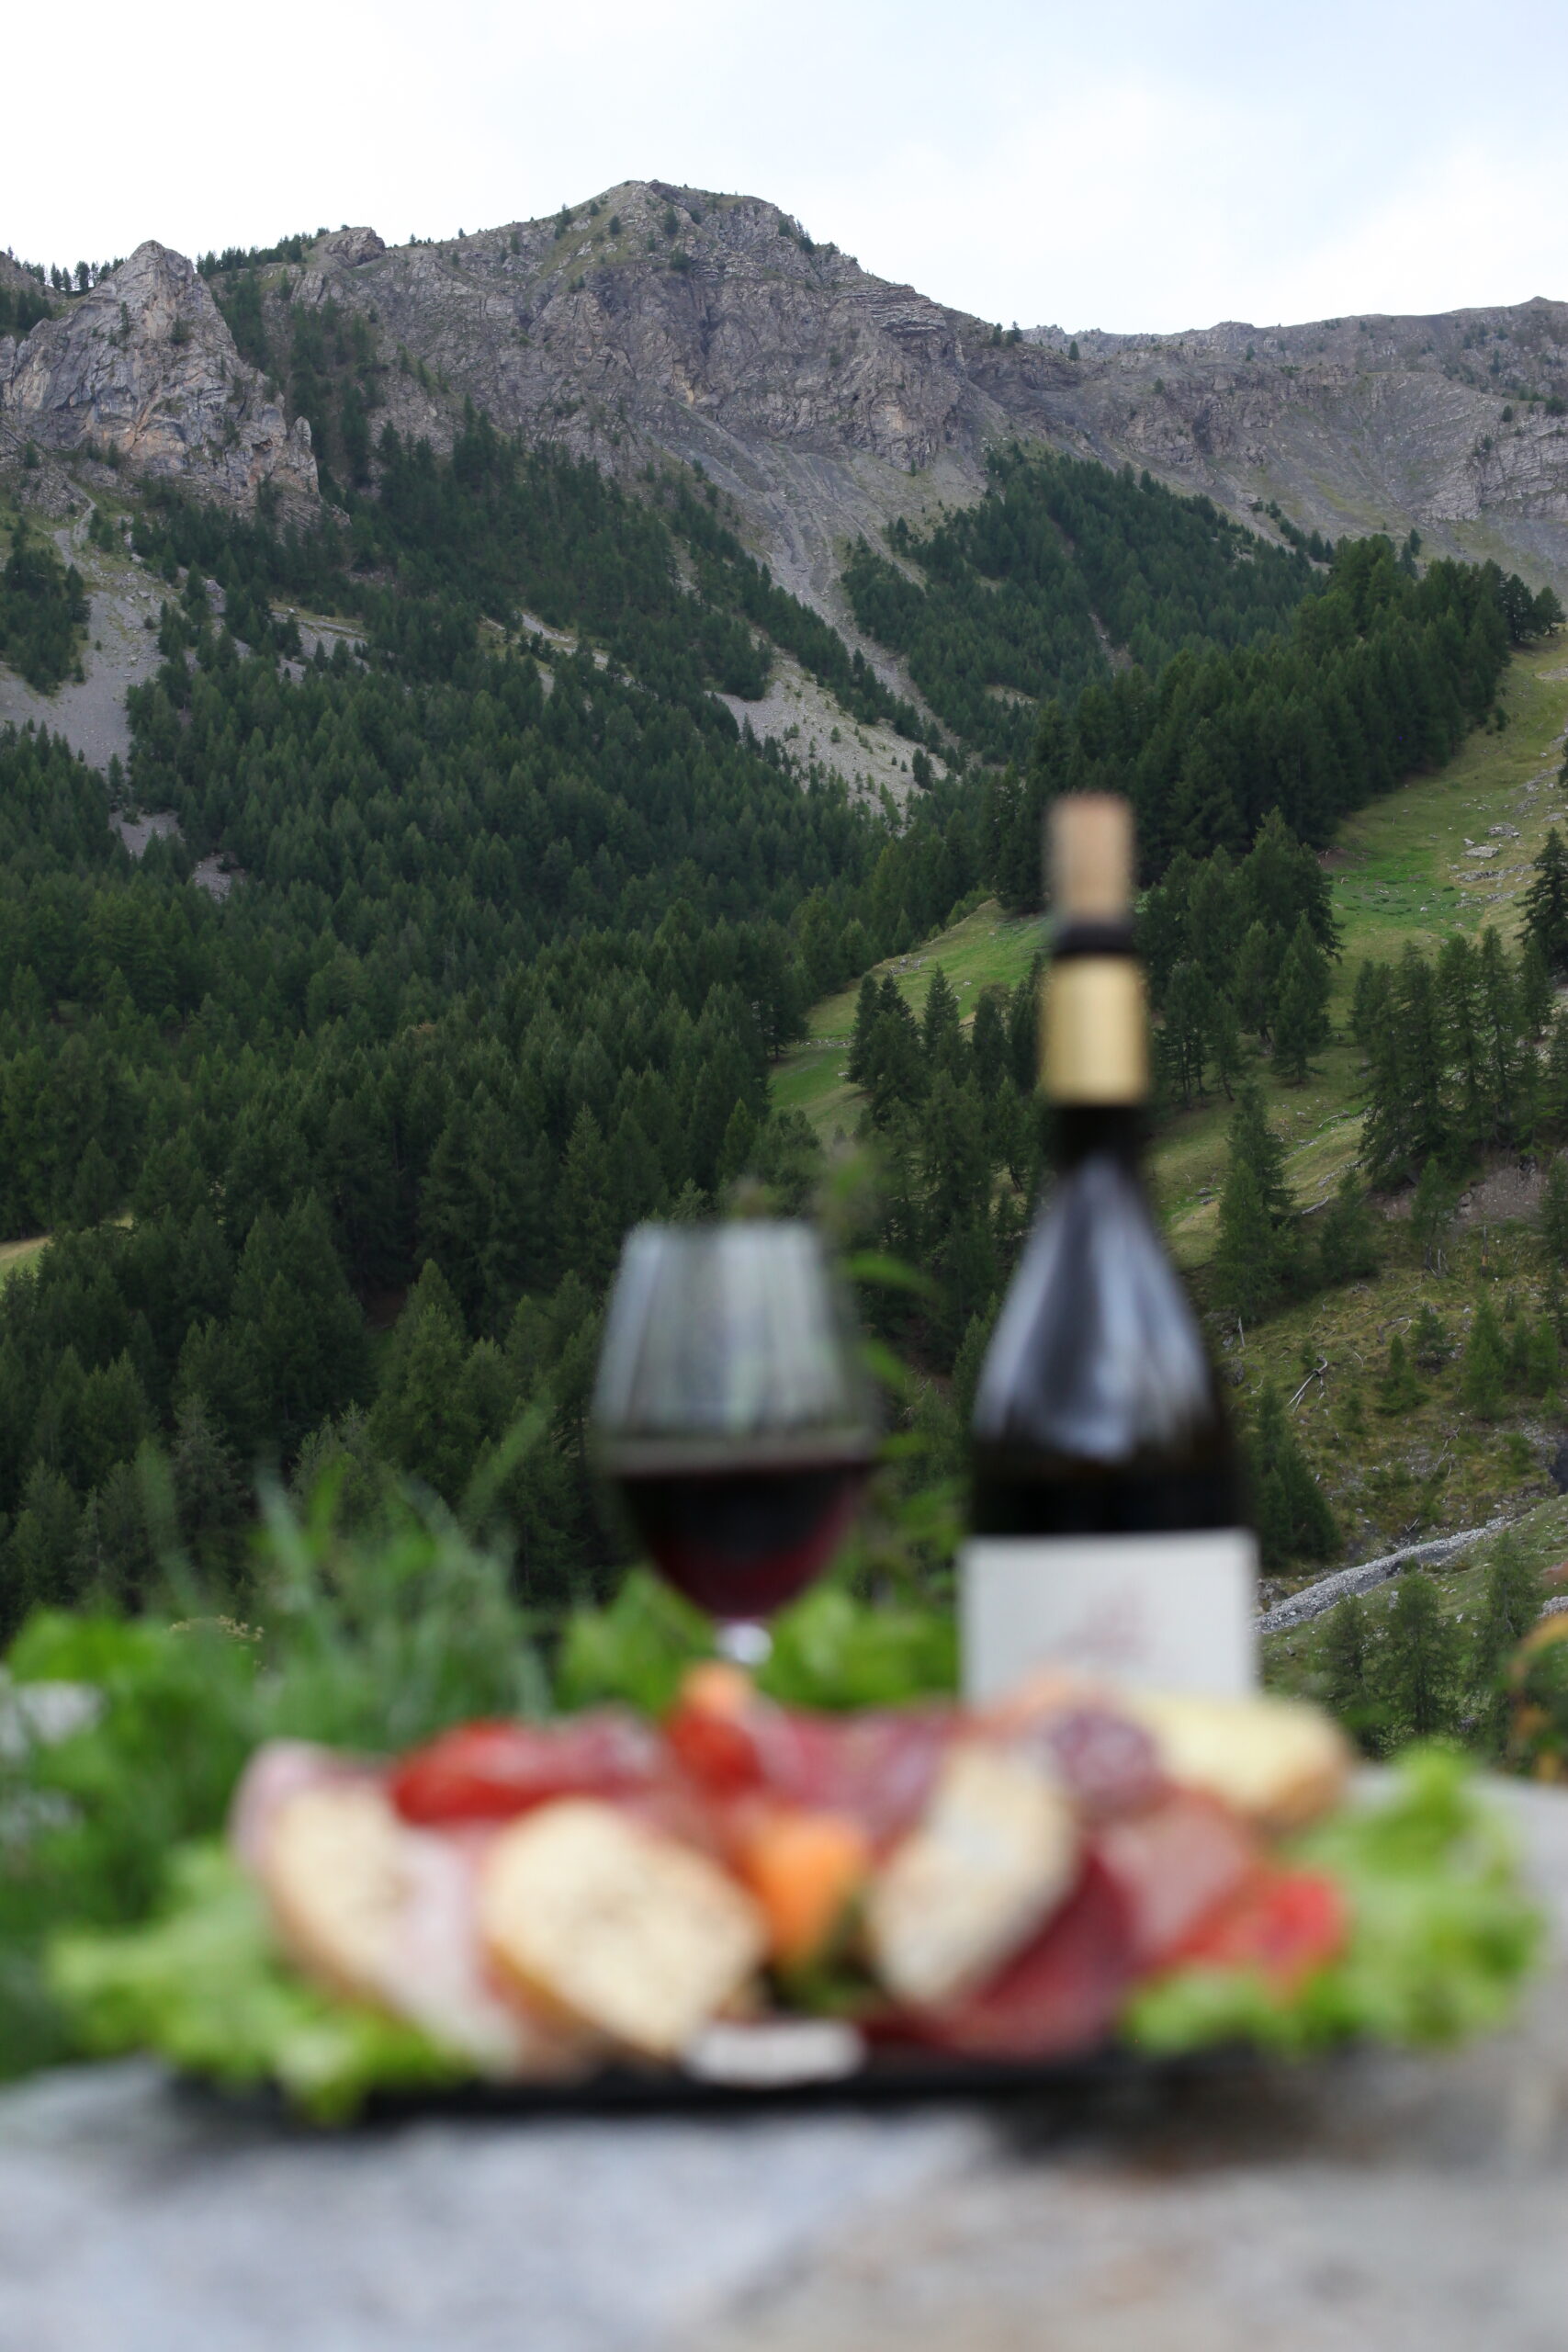 déjeuner en terrasse avec vue panoramique